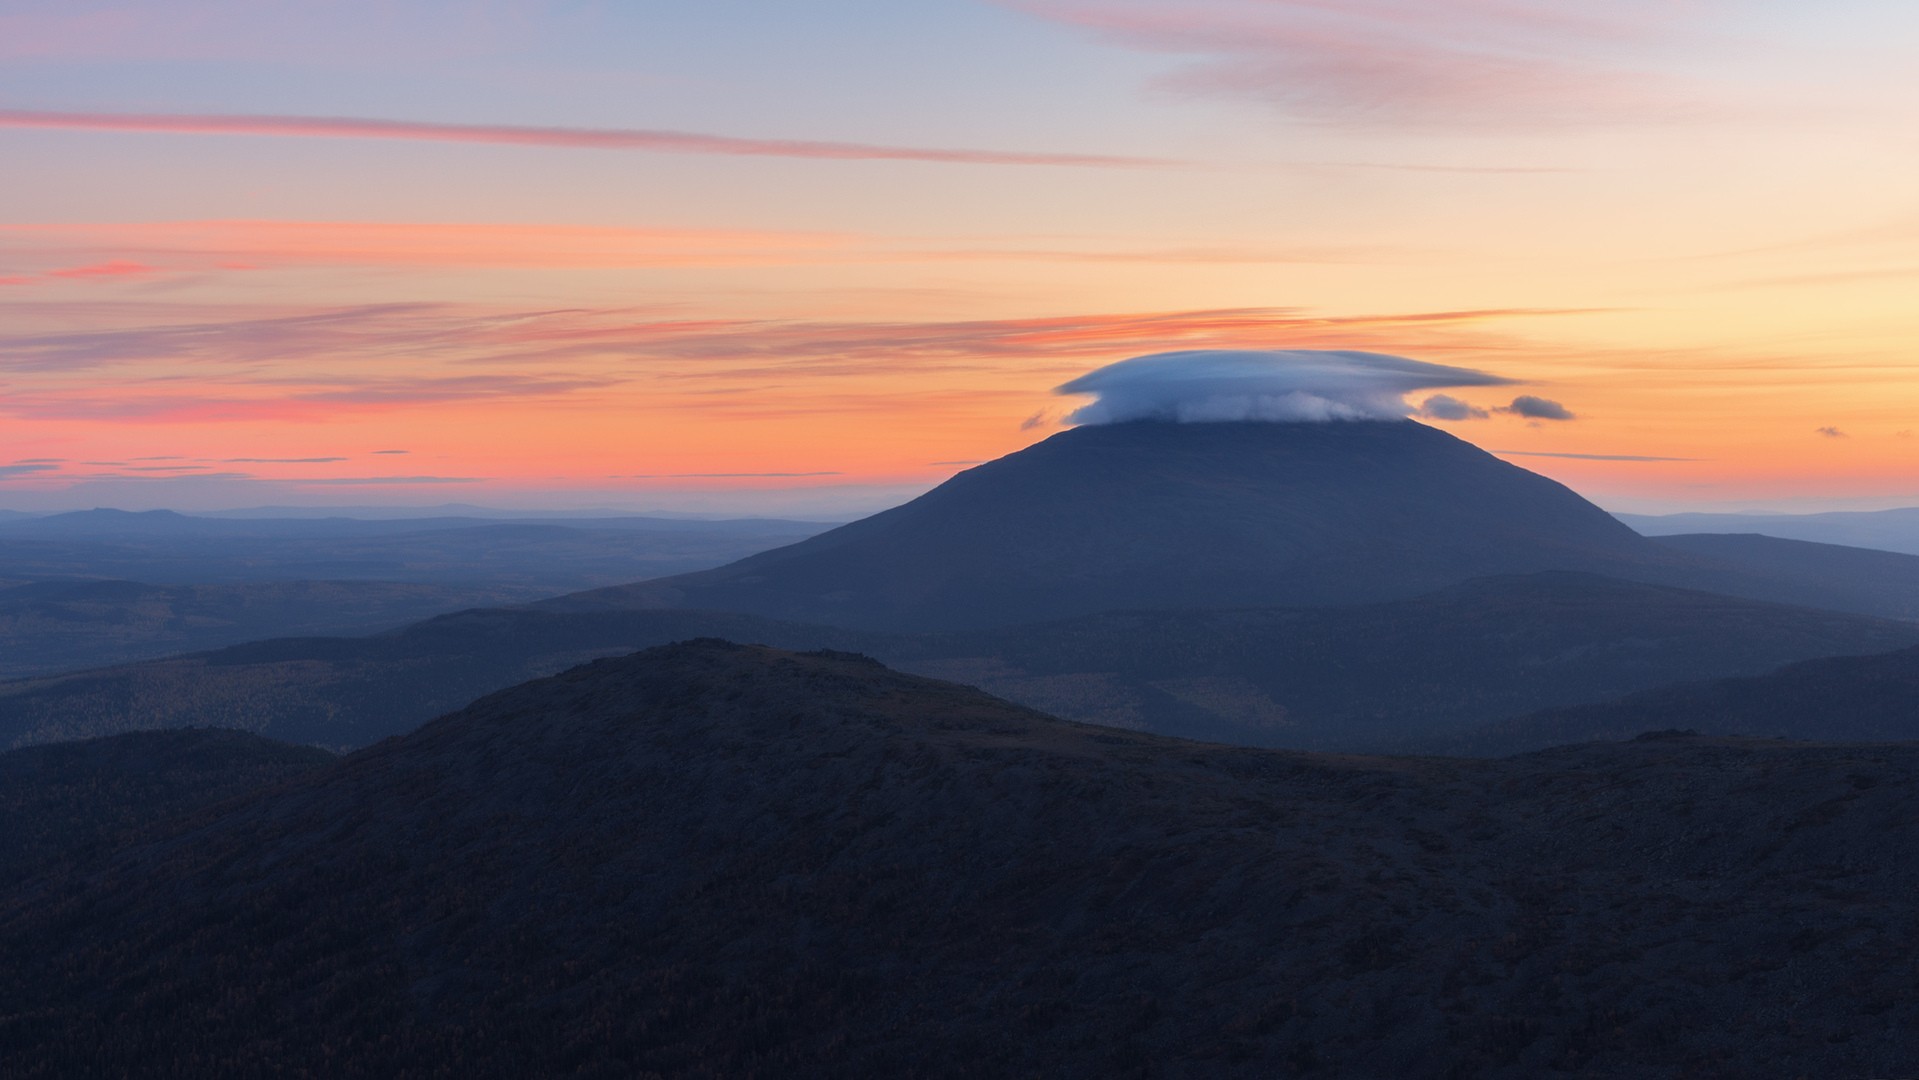 Уральская интерпретация Камчатских вулканов с короной из лентикулярных облаков